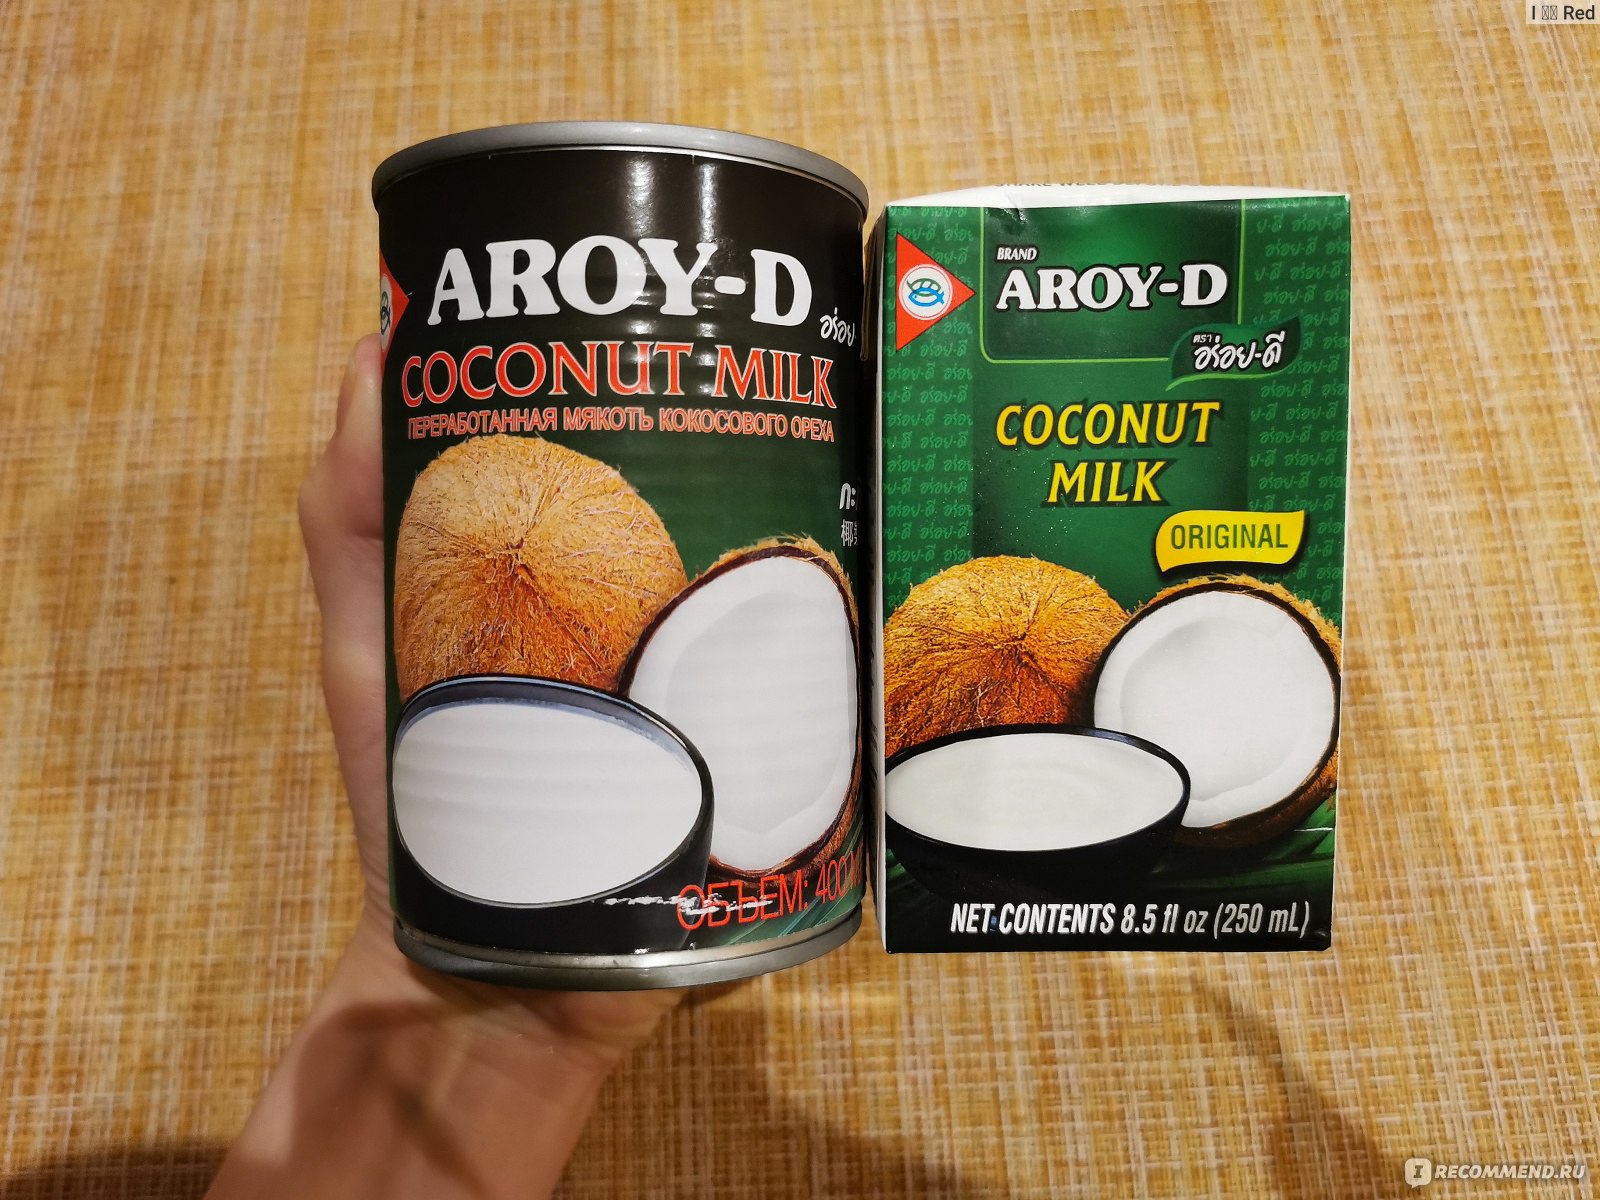 Кокосовое молоко Aroy-d как выглядит внутри